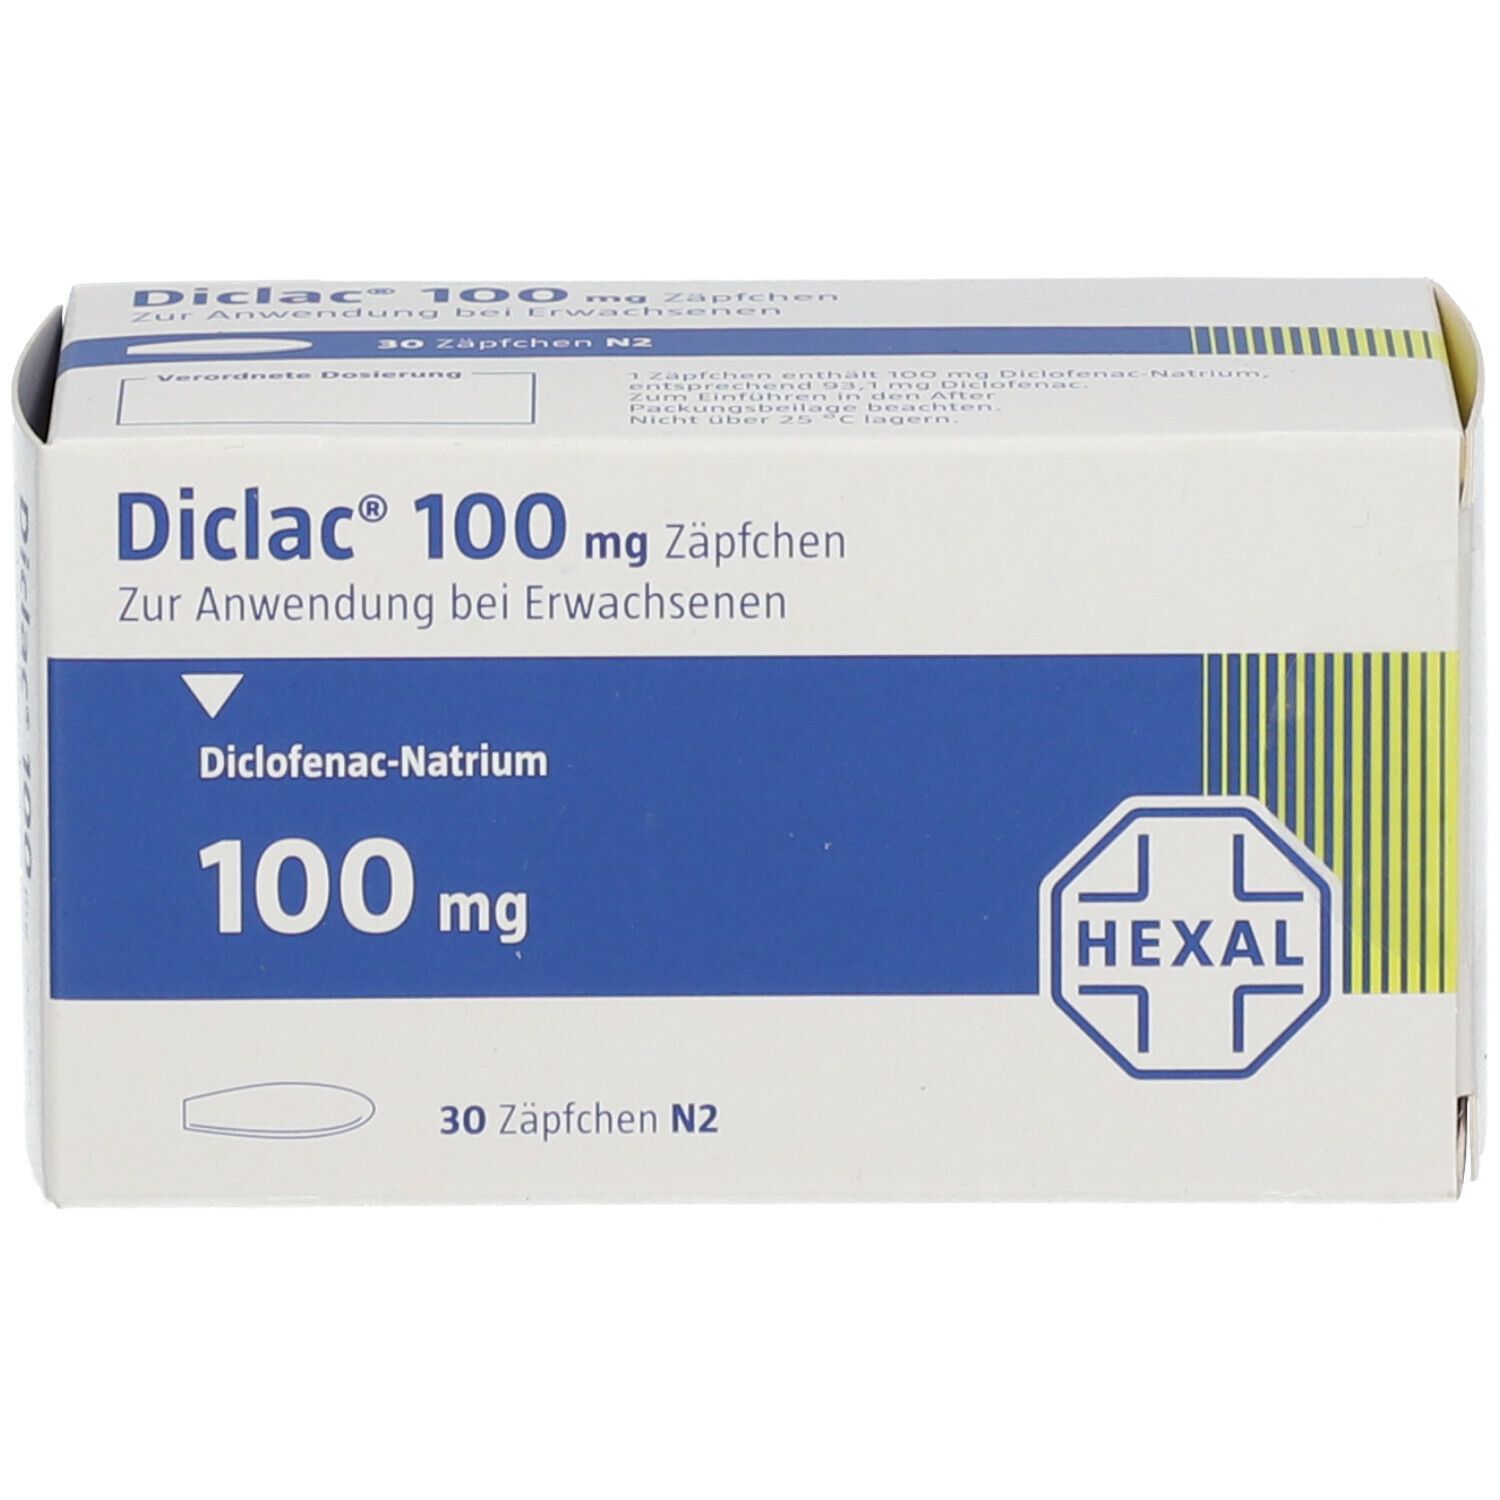 Diclac® 100 mg Zäpfchen